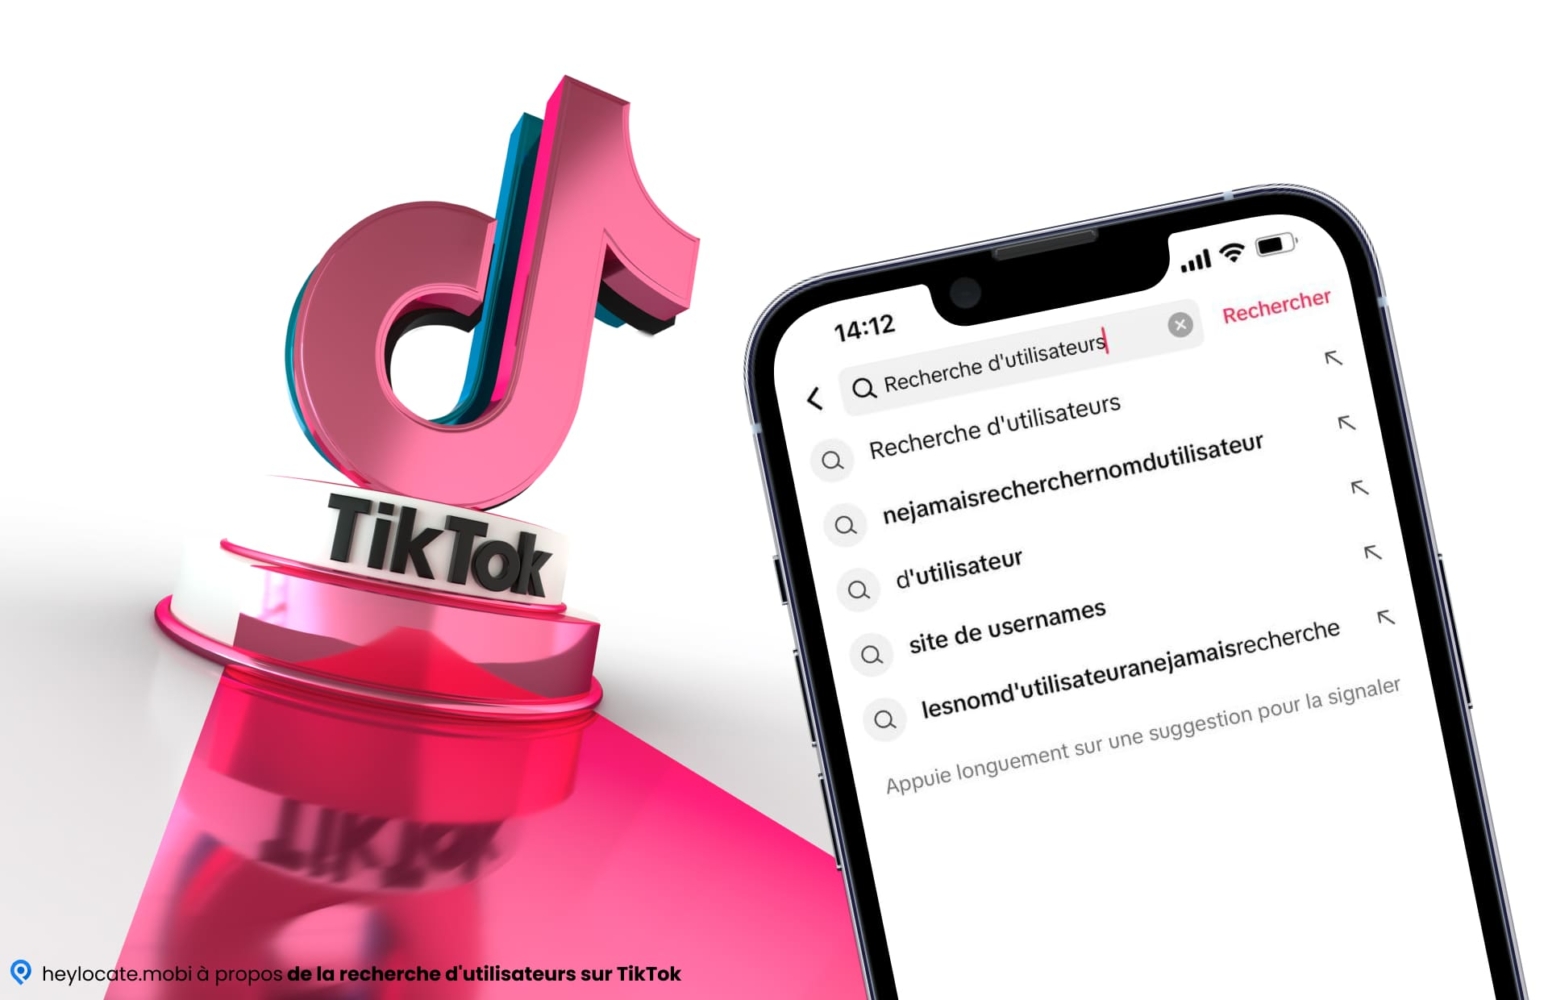 Cette image illustre le concept de recherche d'utilisateurs sur la plateforme TikTok. L'avant-plan montre l'écran d'un téléphone portable avec "User Search" dans la barre de recherche et diverses options de recherche et de prévisualisation de l'utilisateur. L'arrière-plan représente le logo de TikTok dans des couleurs roses et bleues vives. L'ensemble de l'image est moderne et orienté vers le numérique.